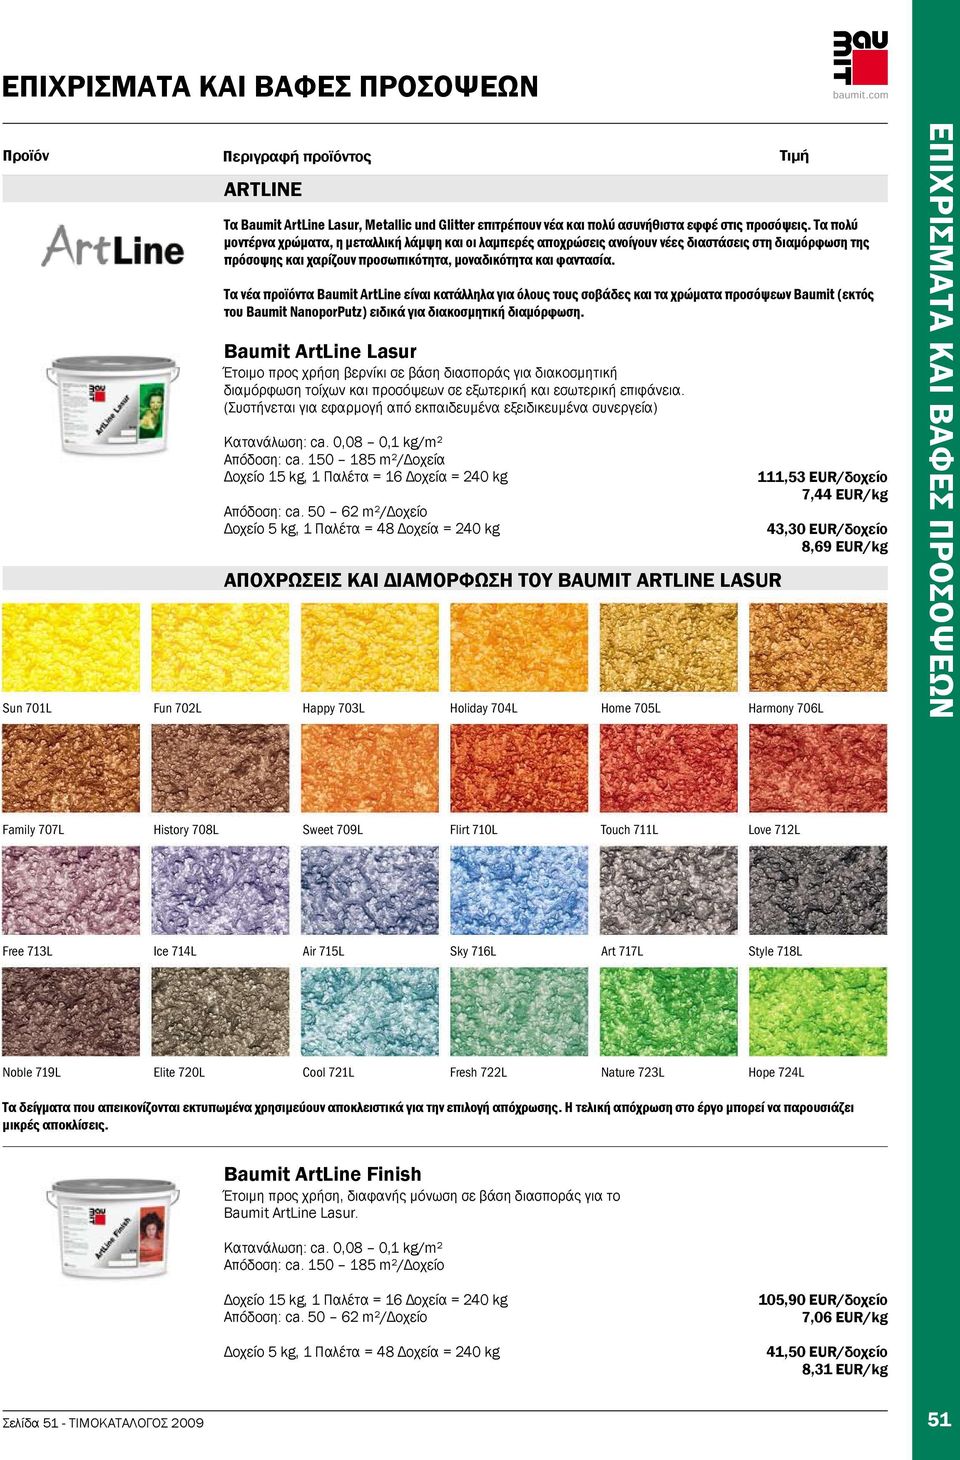 Τα νέα προϊόντα Baumit ArtLine είναι κατάλληλα για όλους τους σοβάδες και τα χρώματα προσόψεων Baumit (εκτός του Baumit NanoporPutz) ειδικά για διακοσμητική διαμόρφωση.